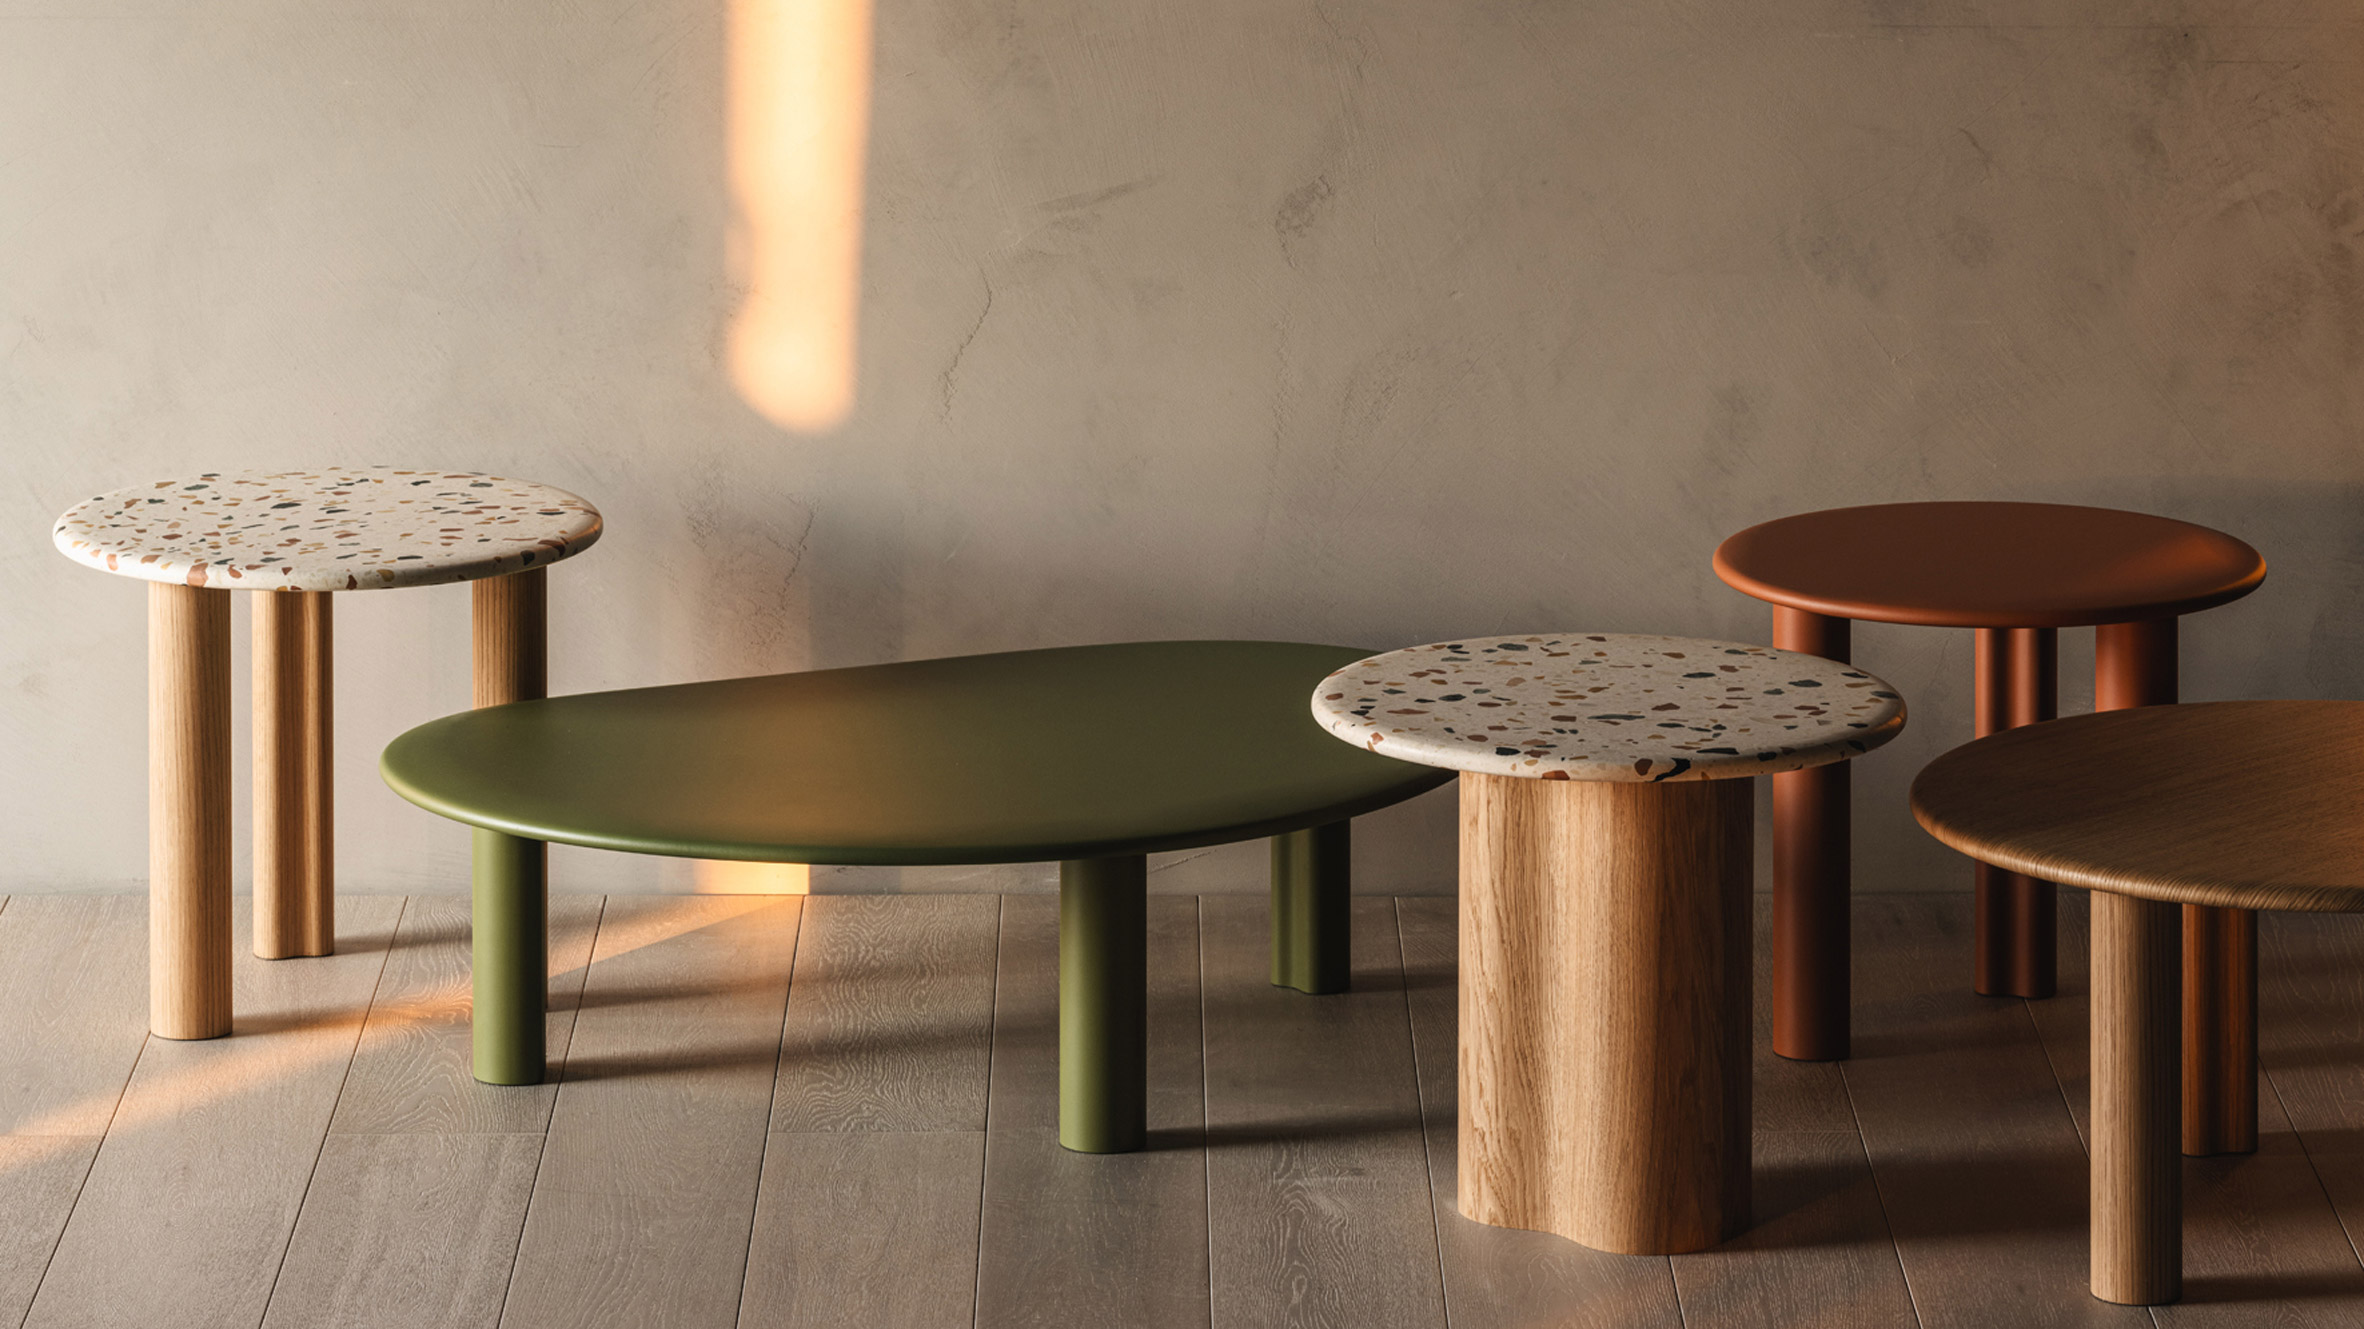 Ten furniture designs presented at Milan design week